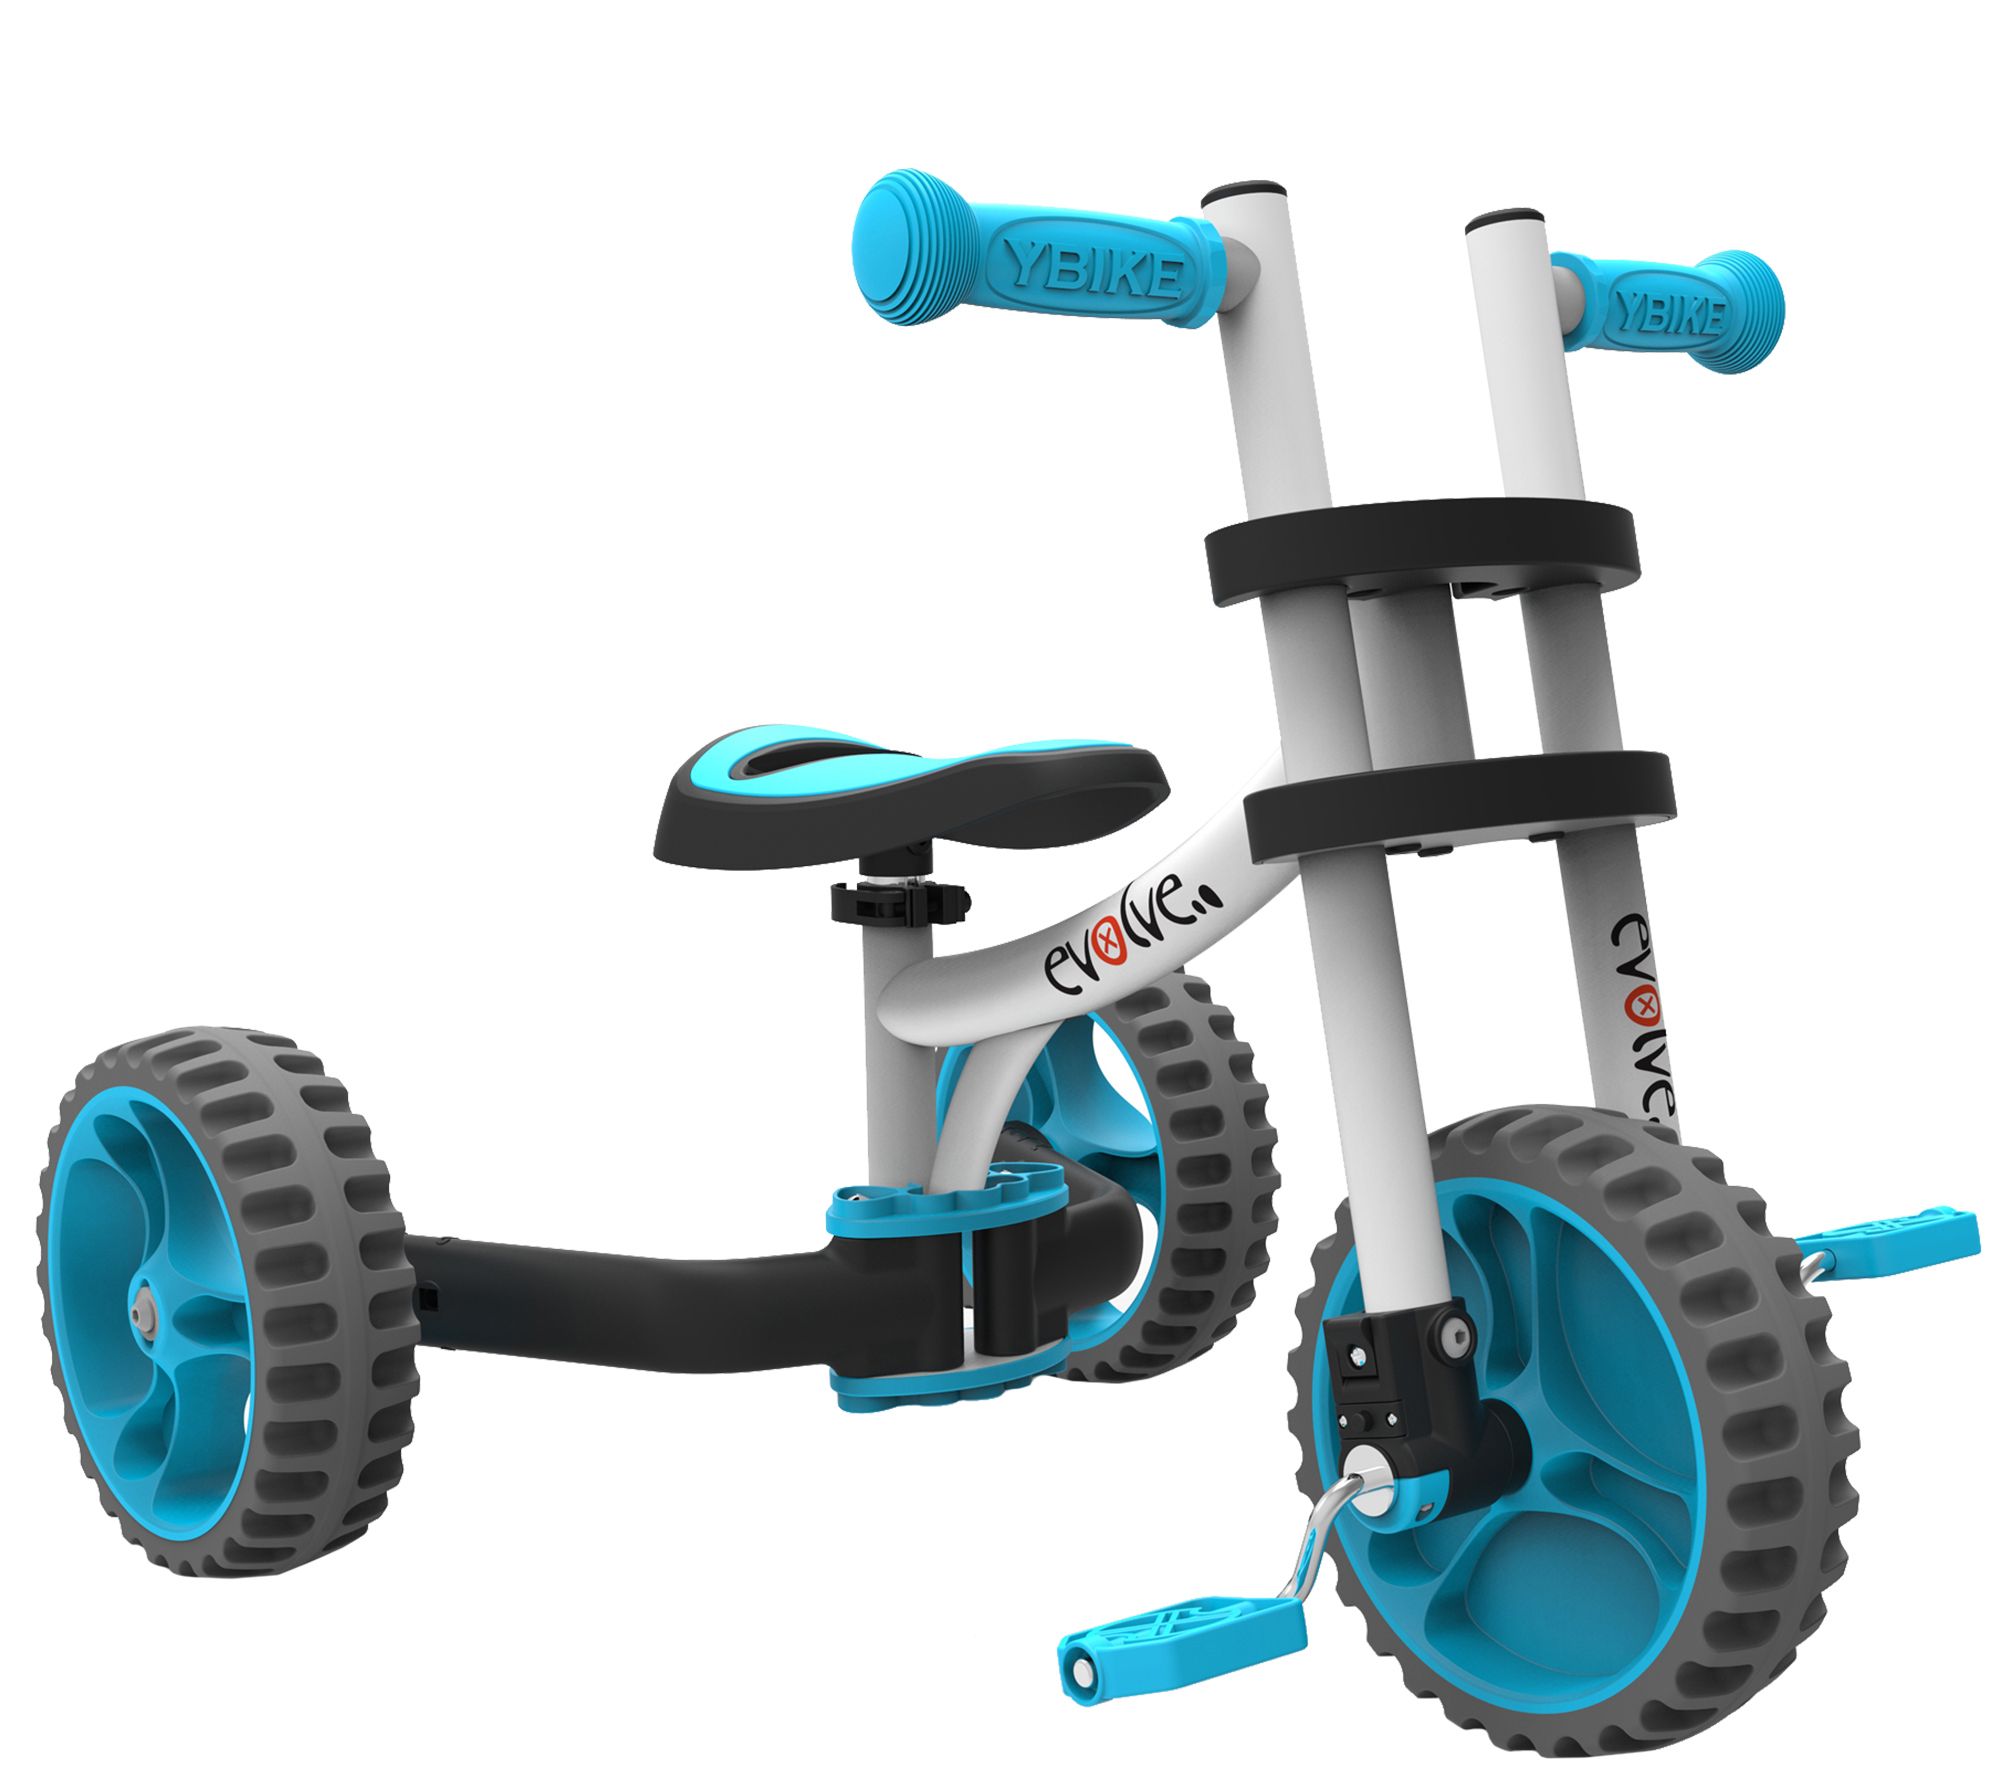 YBike Evolve 3-in-1 Trike and Balance Bike - QVC.com